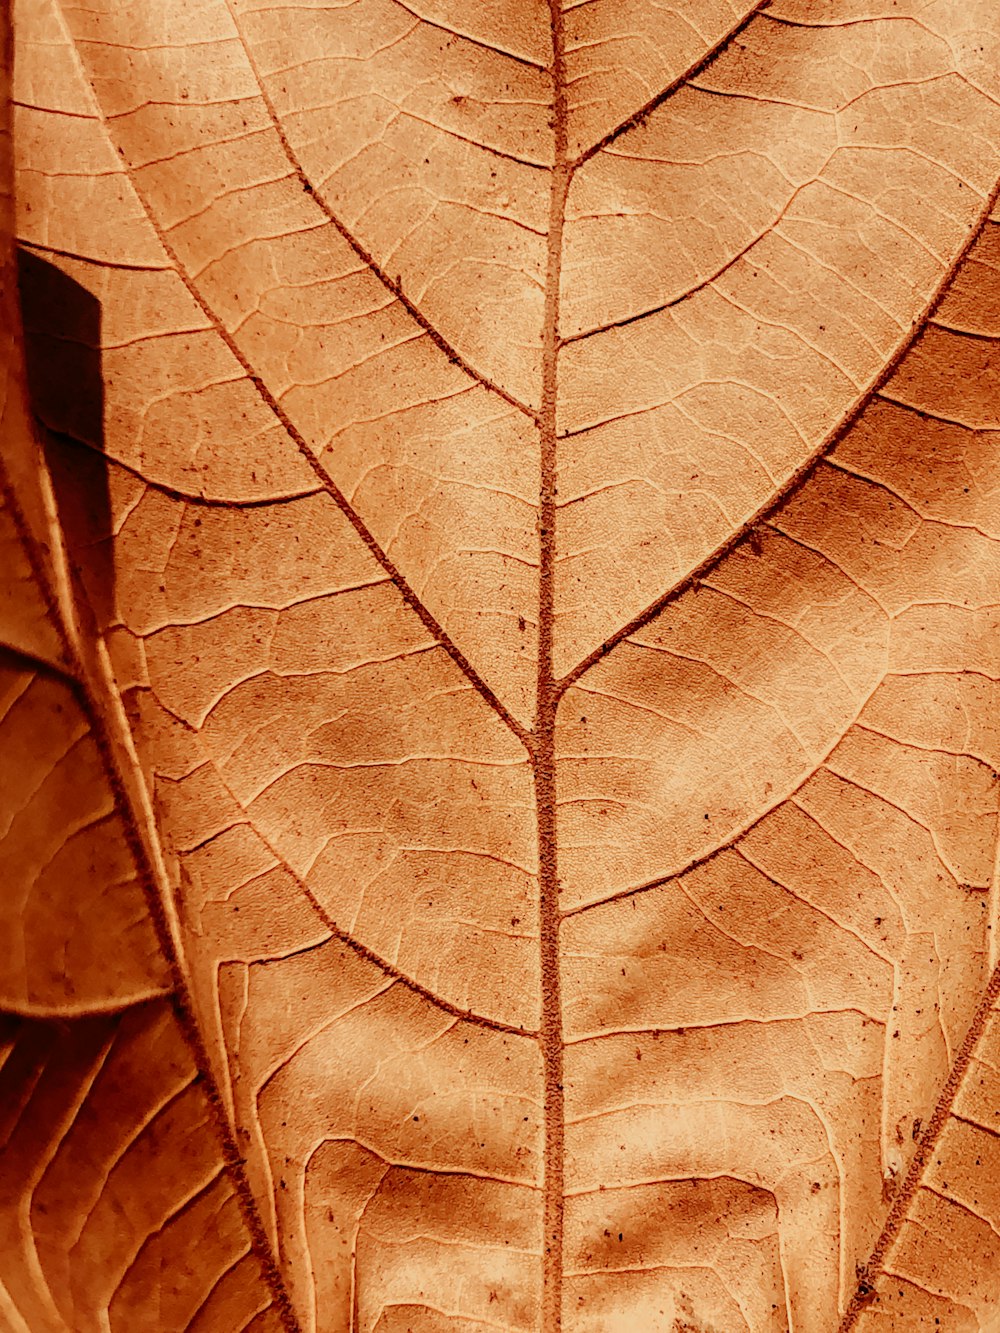 クローズアップ写真の茶色の葉